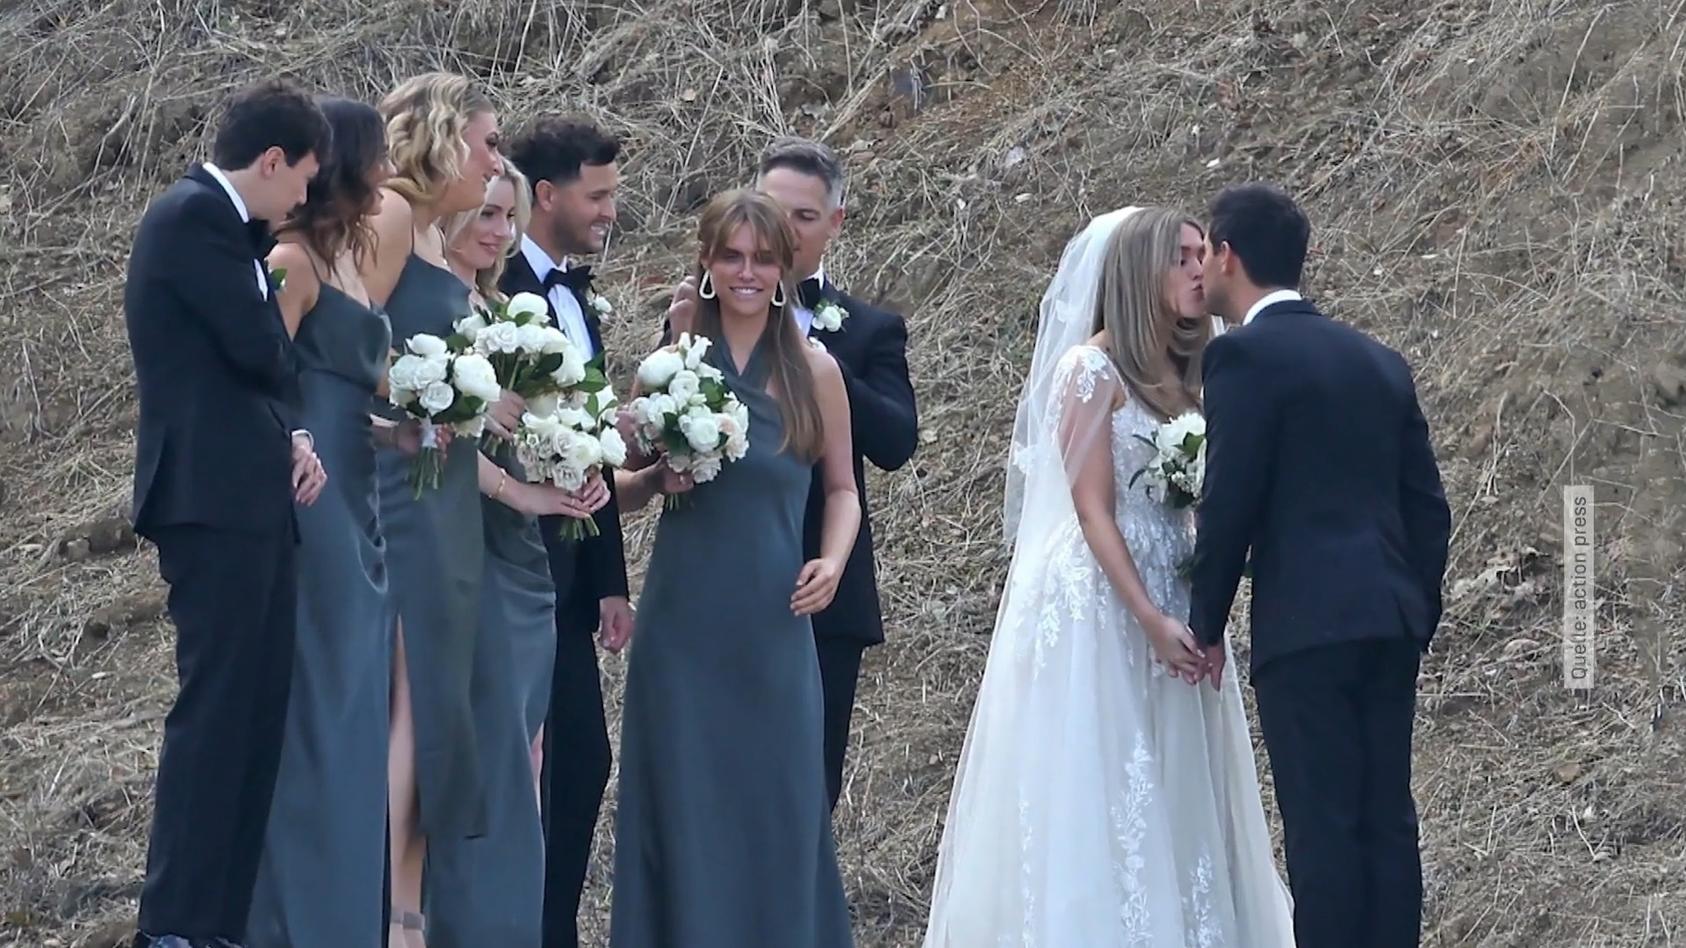 Taylor Lautner feiert romantische Hochzeit mit Taylor Dome Ein Jahr nach der Verlobung